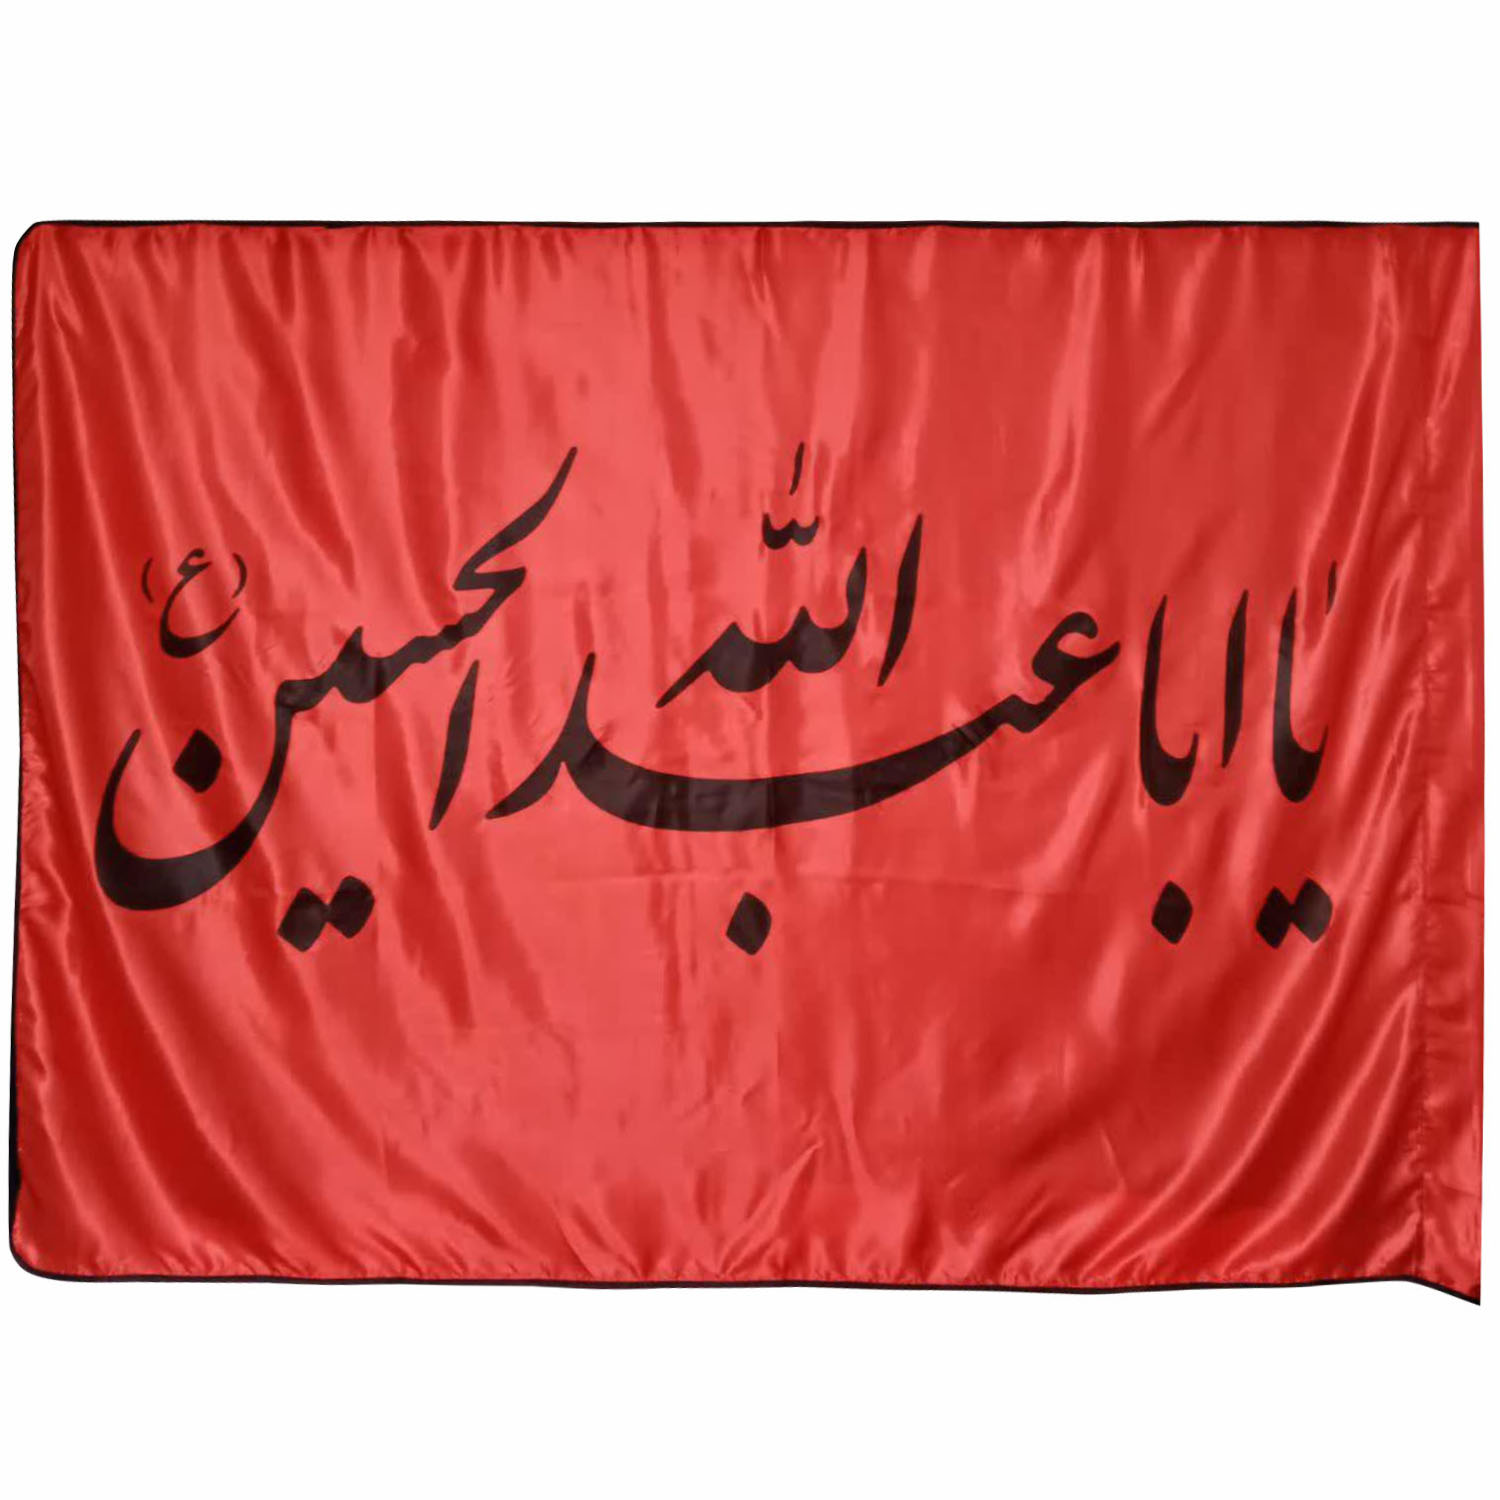  پرچم طرح یا ابا عبدالله الحسین (ع)